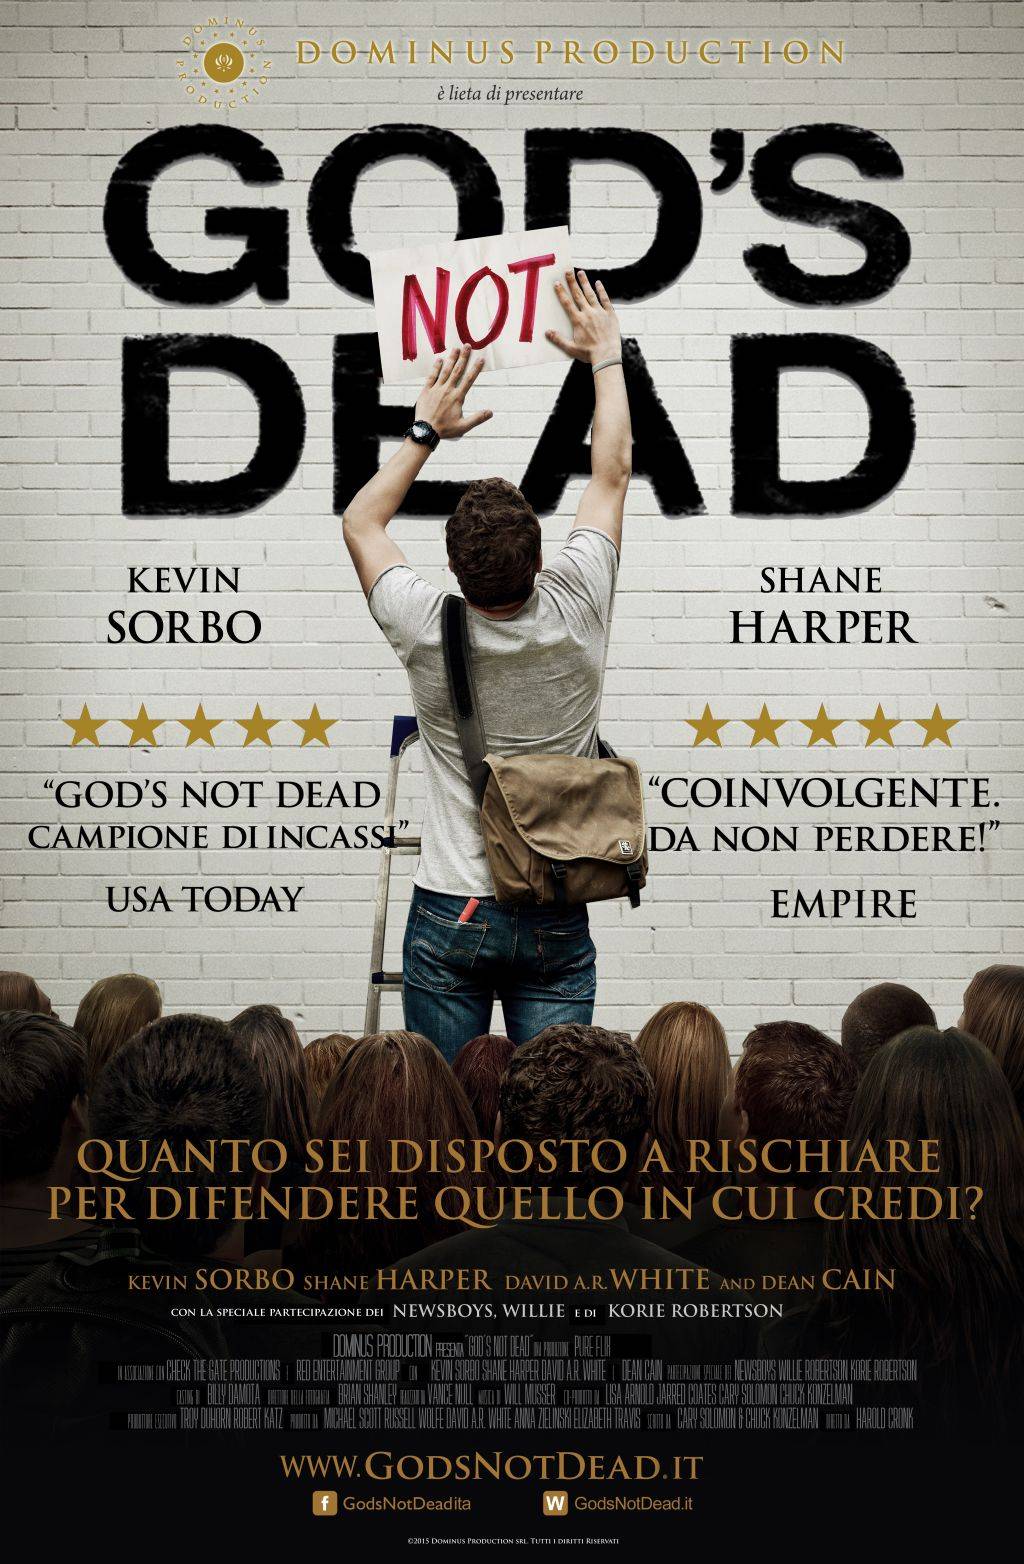 Religione cattolica bandita dalle sale: "Censurato il film Dio non è morto"